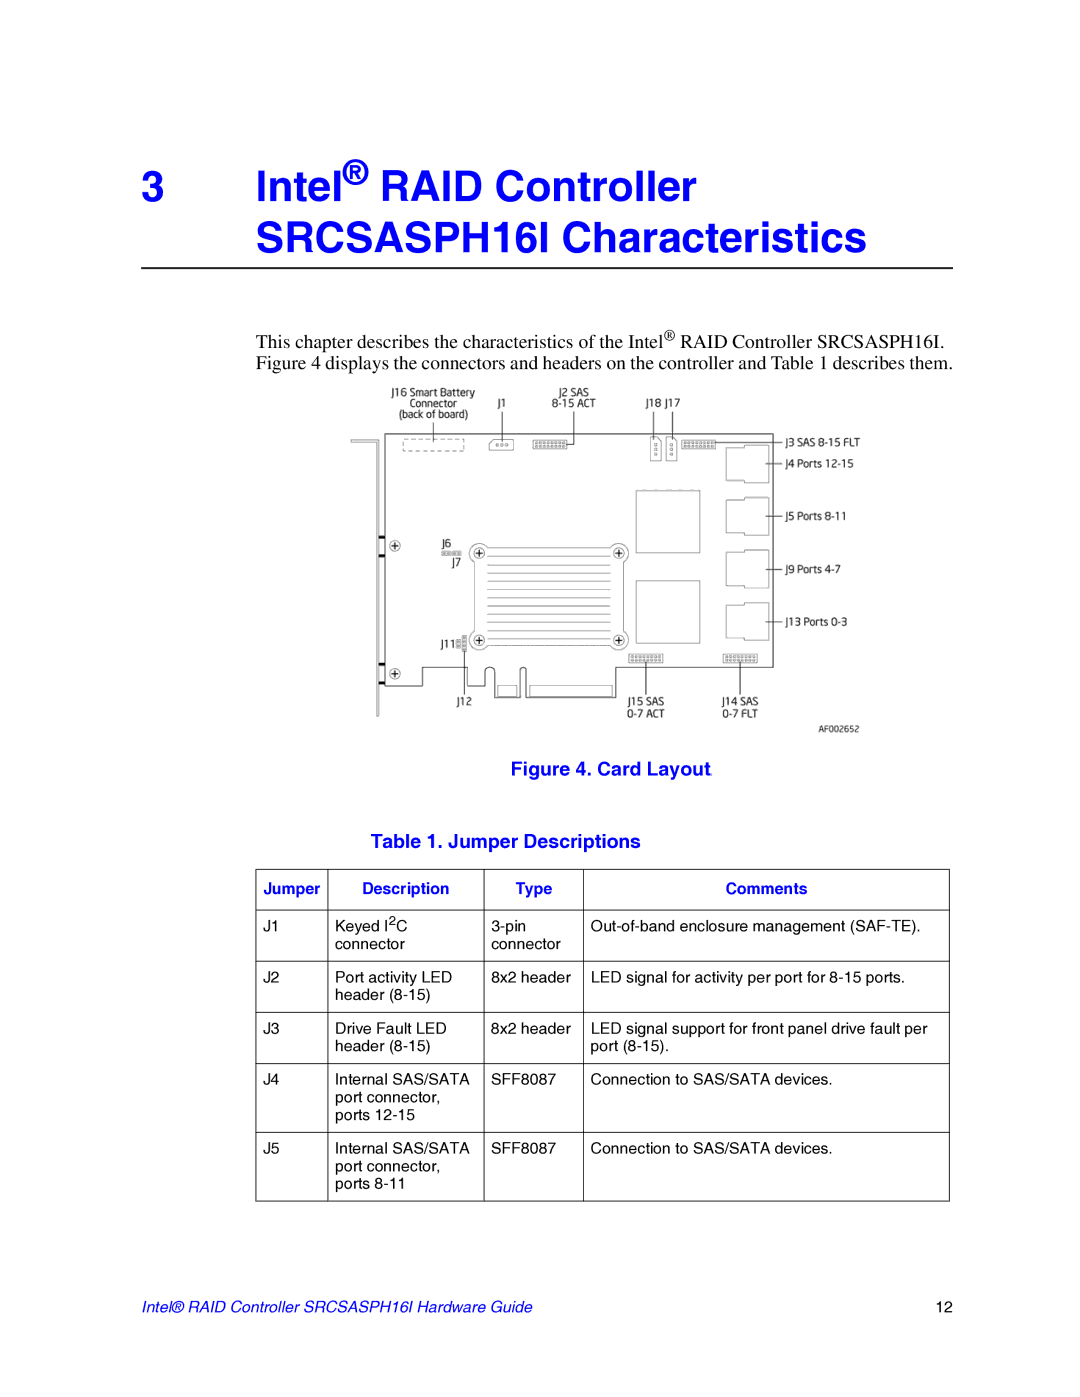 Intel manual Intel RAID Controller SRCSASPH16I Characteristics, Jumper Description Type Comments 